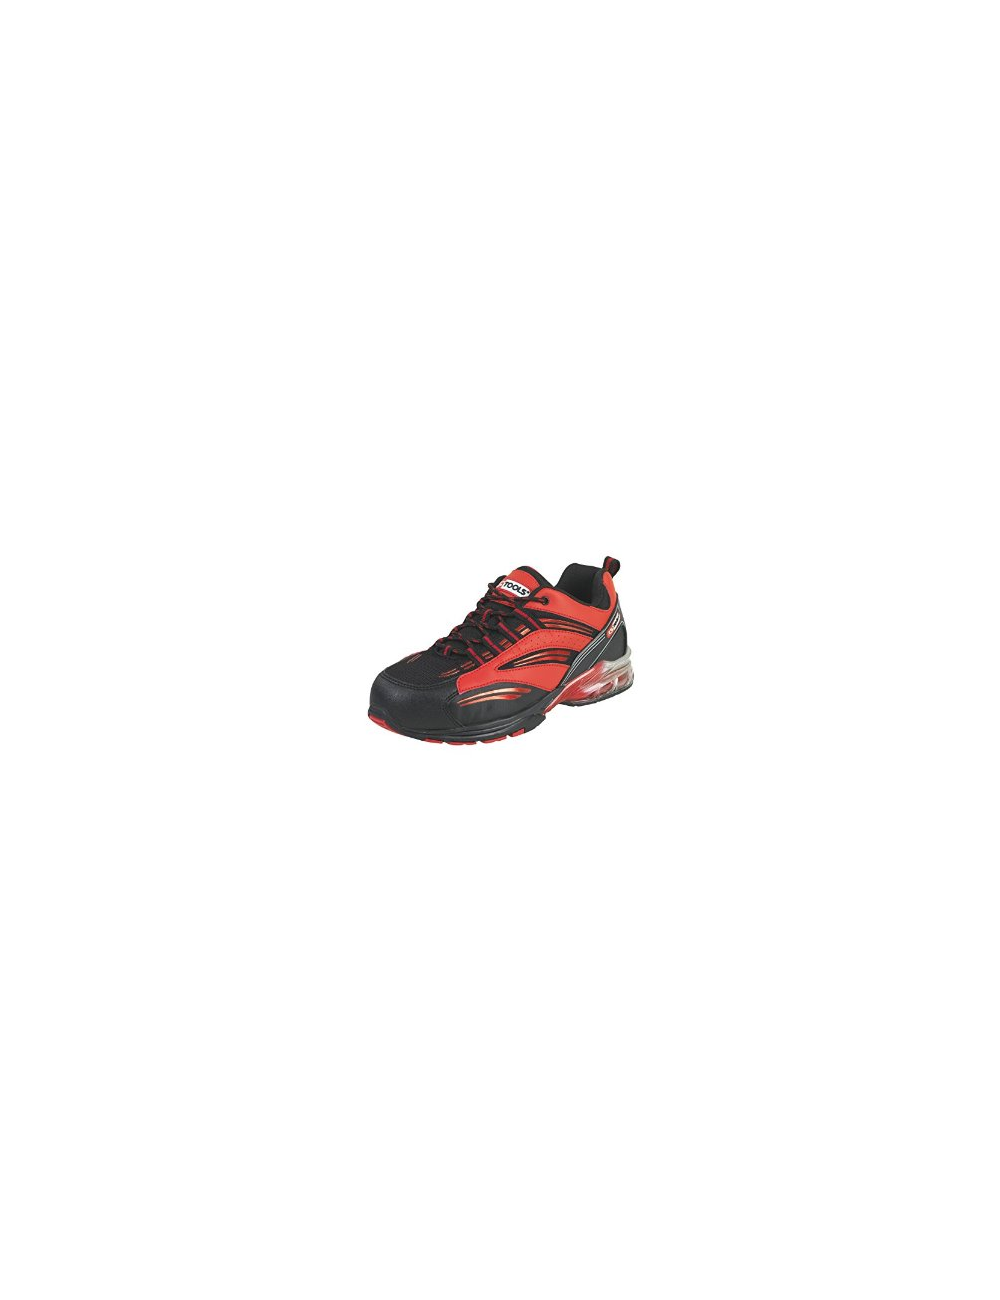 Chaussures de sécurité - Modèle coussin d'air rouge T40